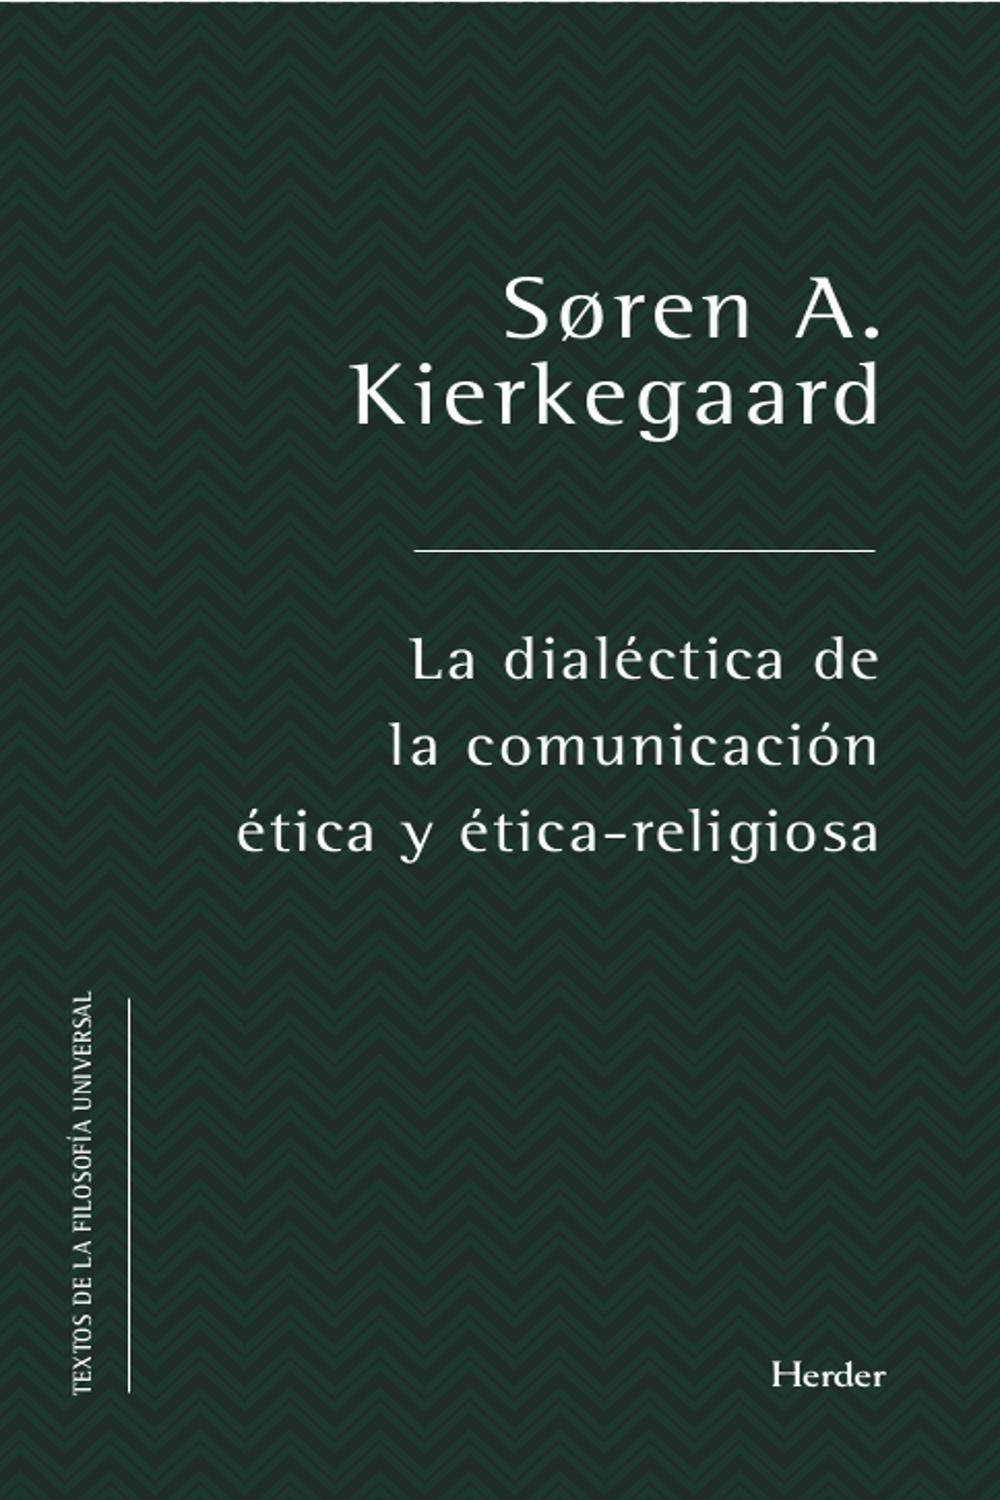 La dialéctica de la comunicación ética y ético-religiosa - Kierkegaard, Søren Aabye